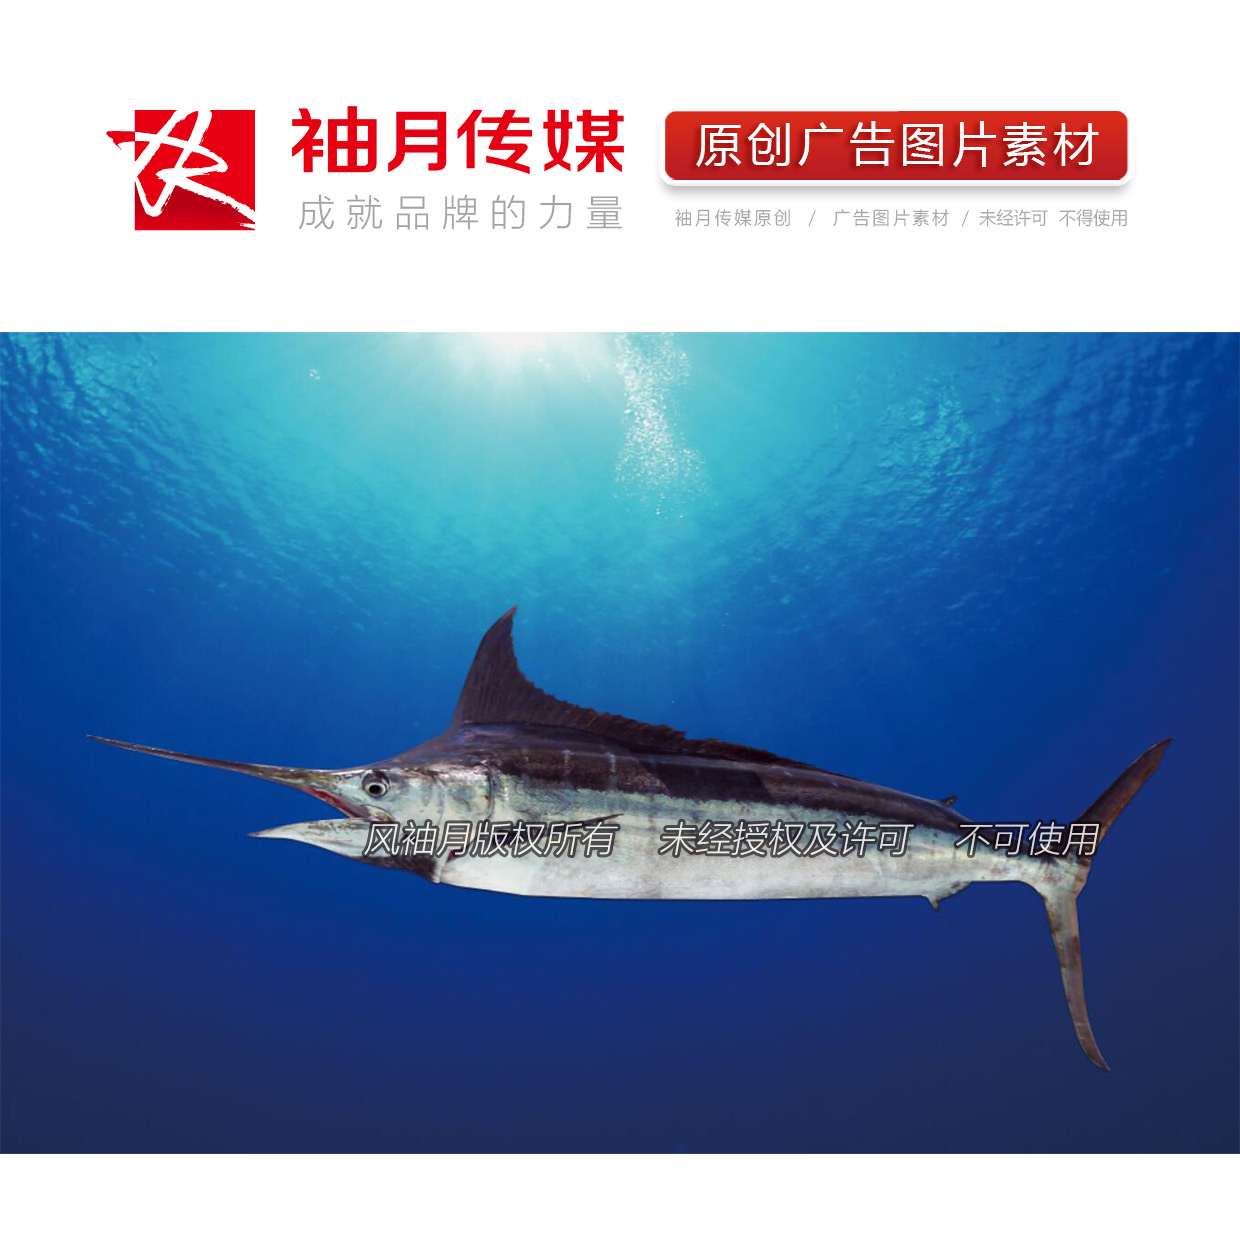 1张海底游弋的剑鱼高清广告图片素材 海鱼海洋动物世界广告素材